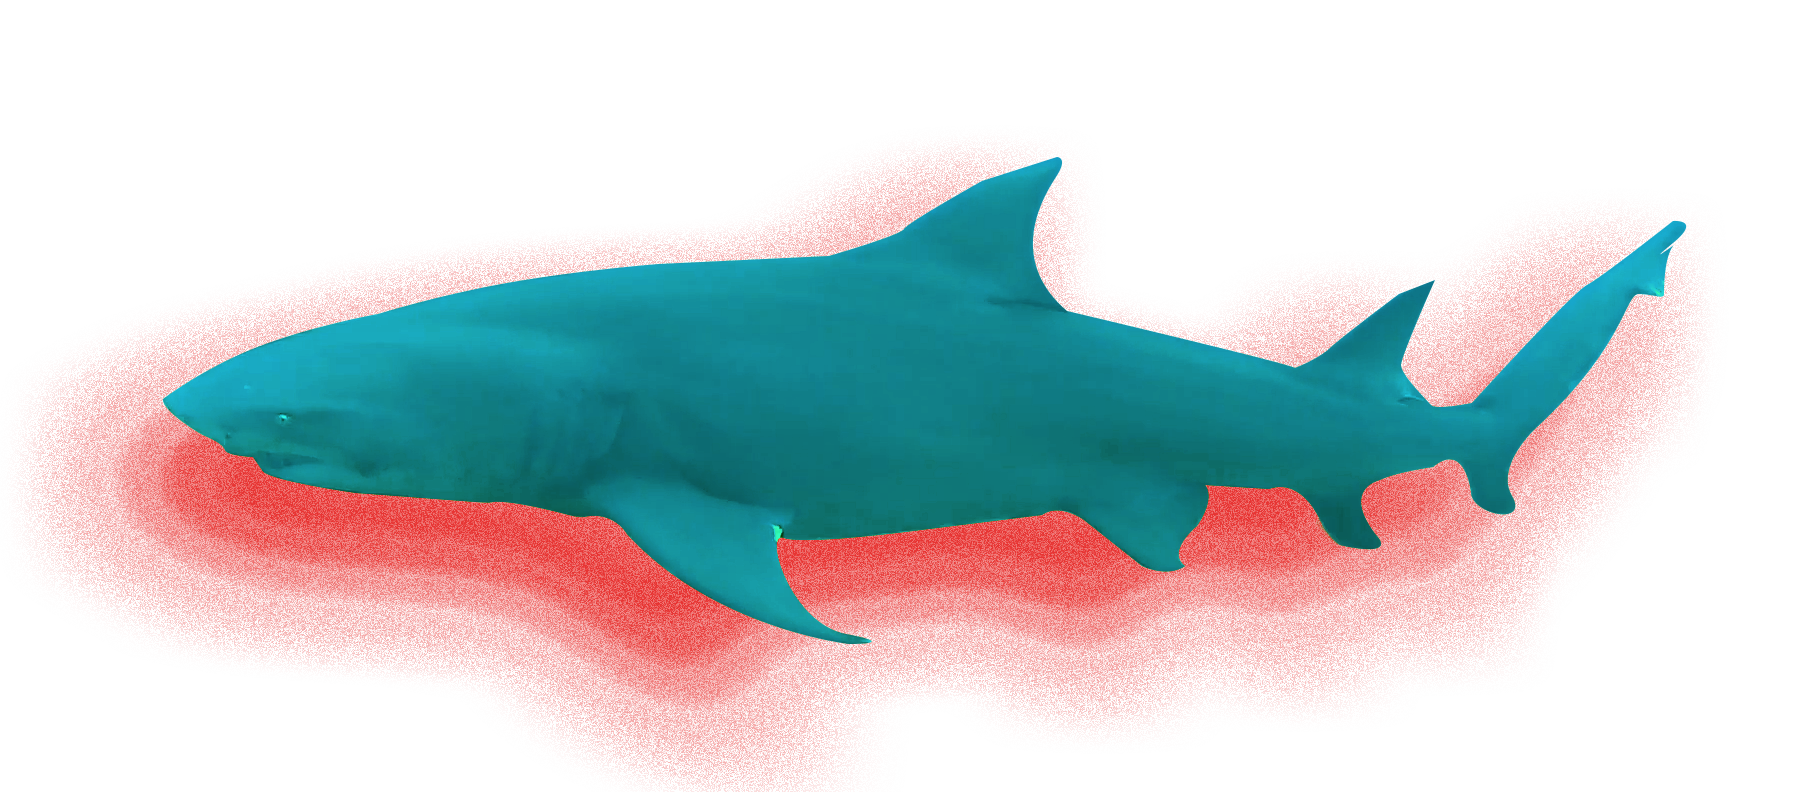 9 foot Lemon Shark